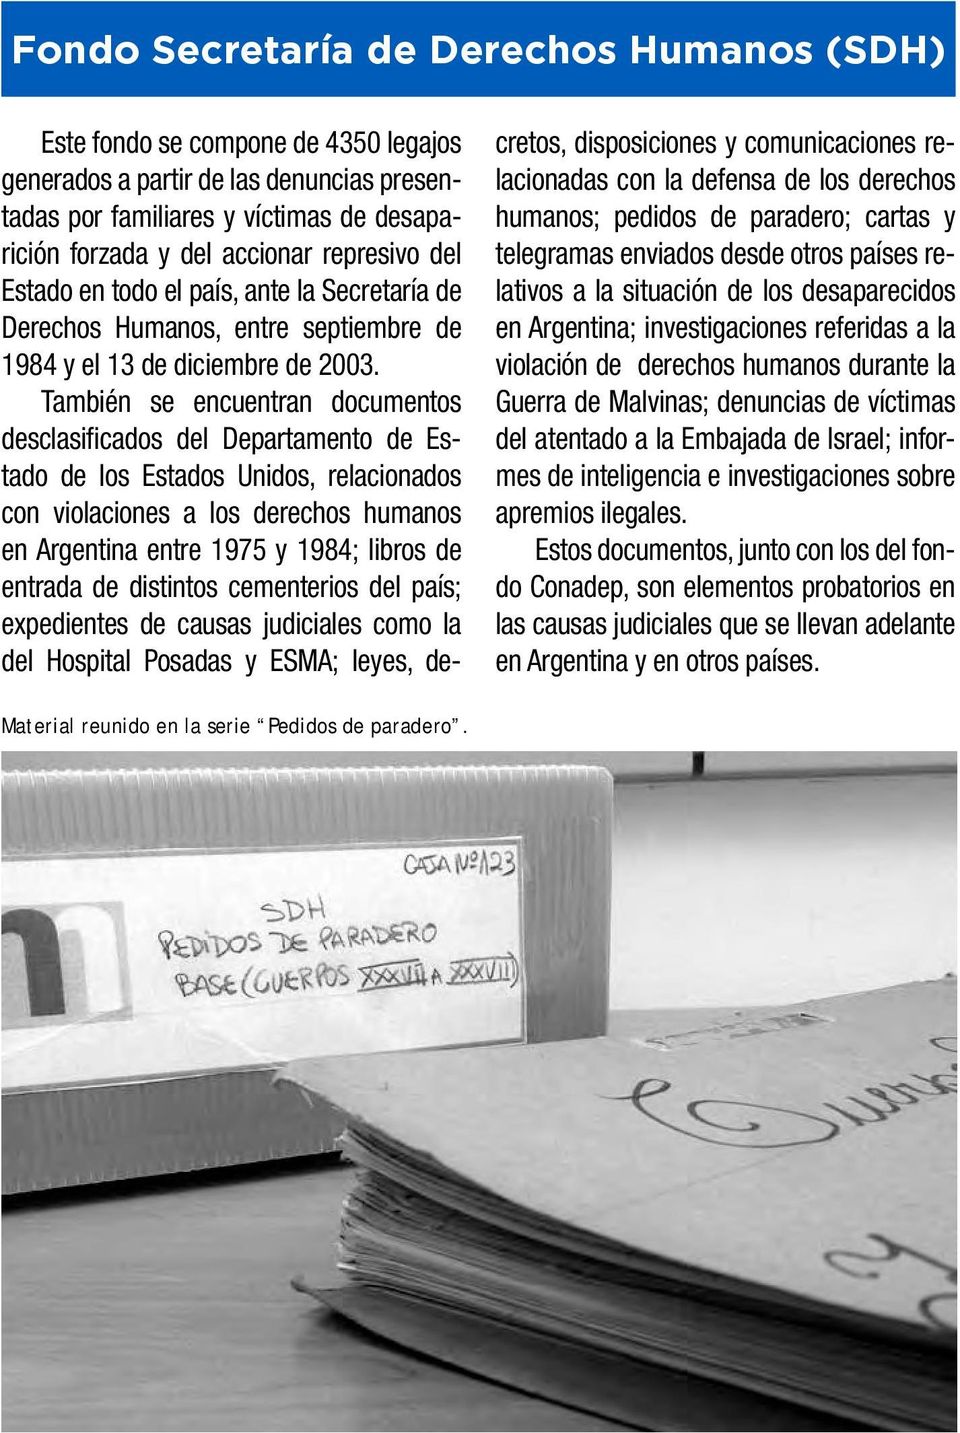 También se encuentran documentos desclasificados del Departamento de Estado de los Estados Unidos, relacionados con violaciones a los derechos humanos en Argentina entre 1975 y 1984; libros de